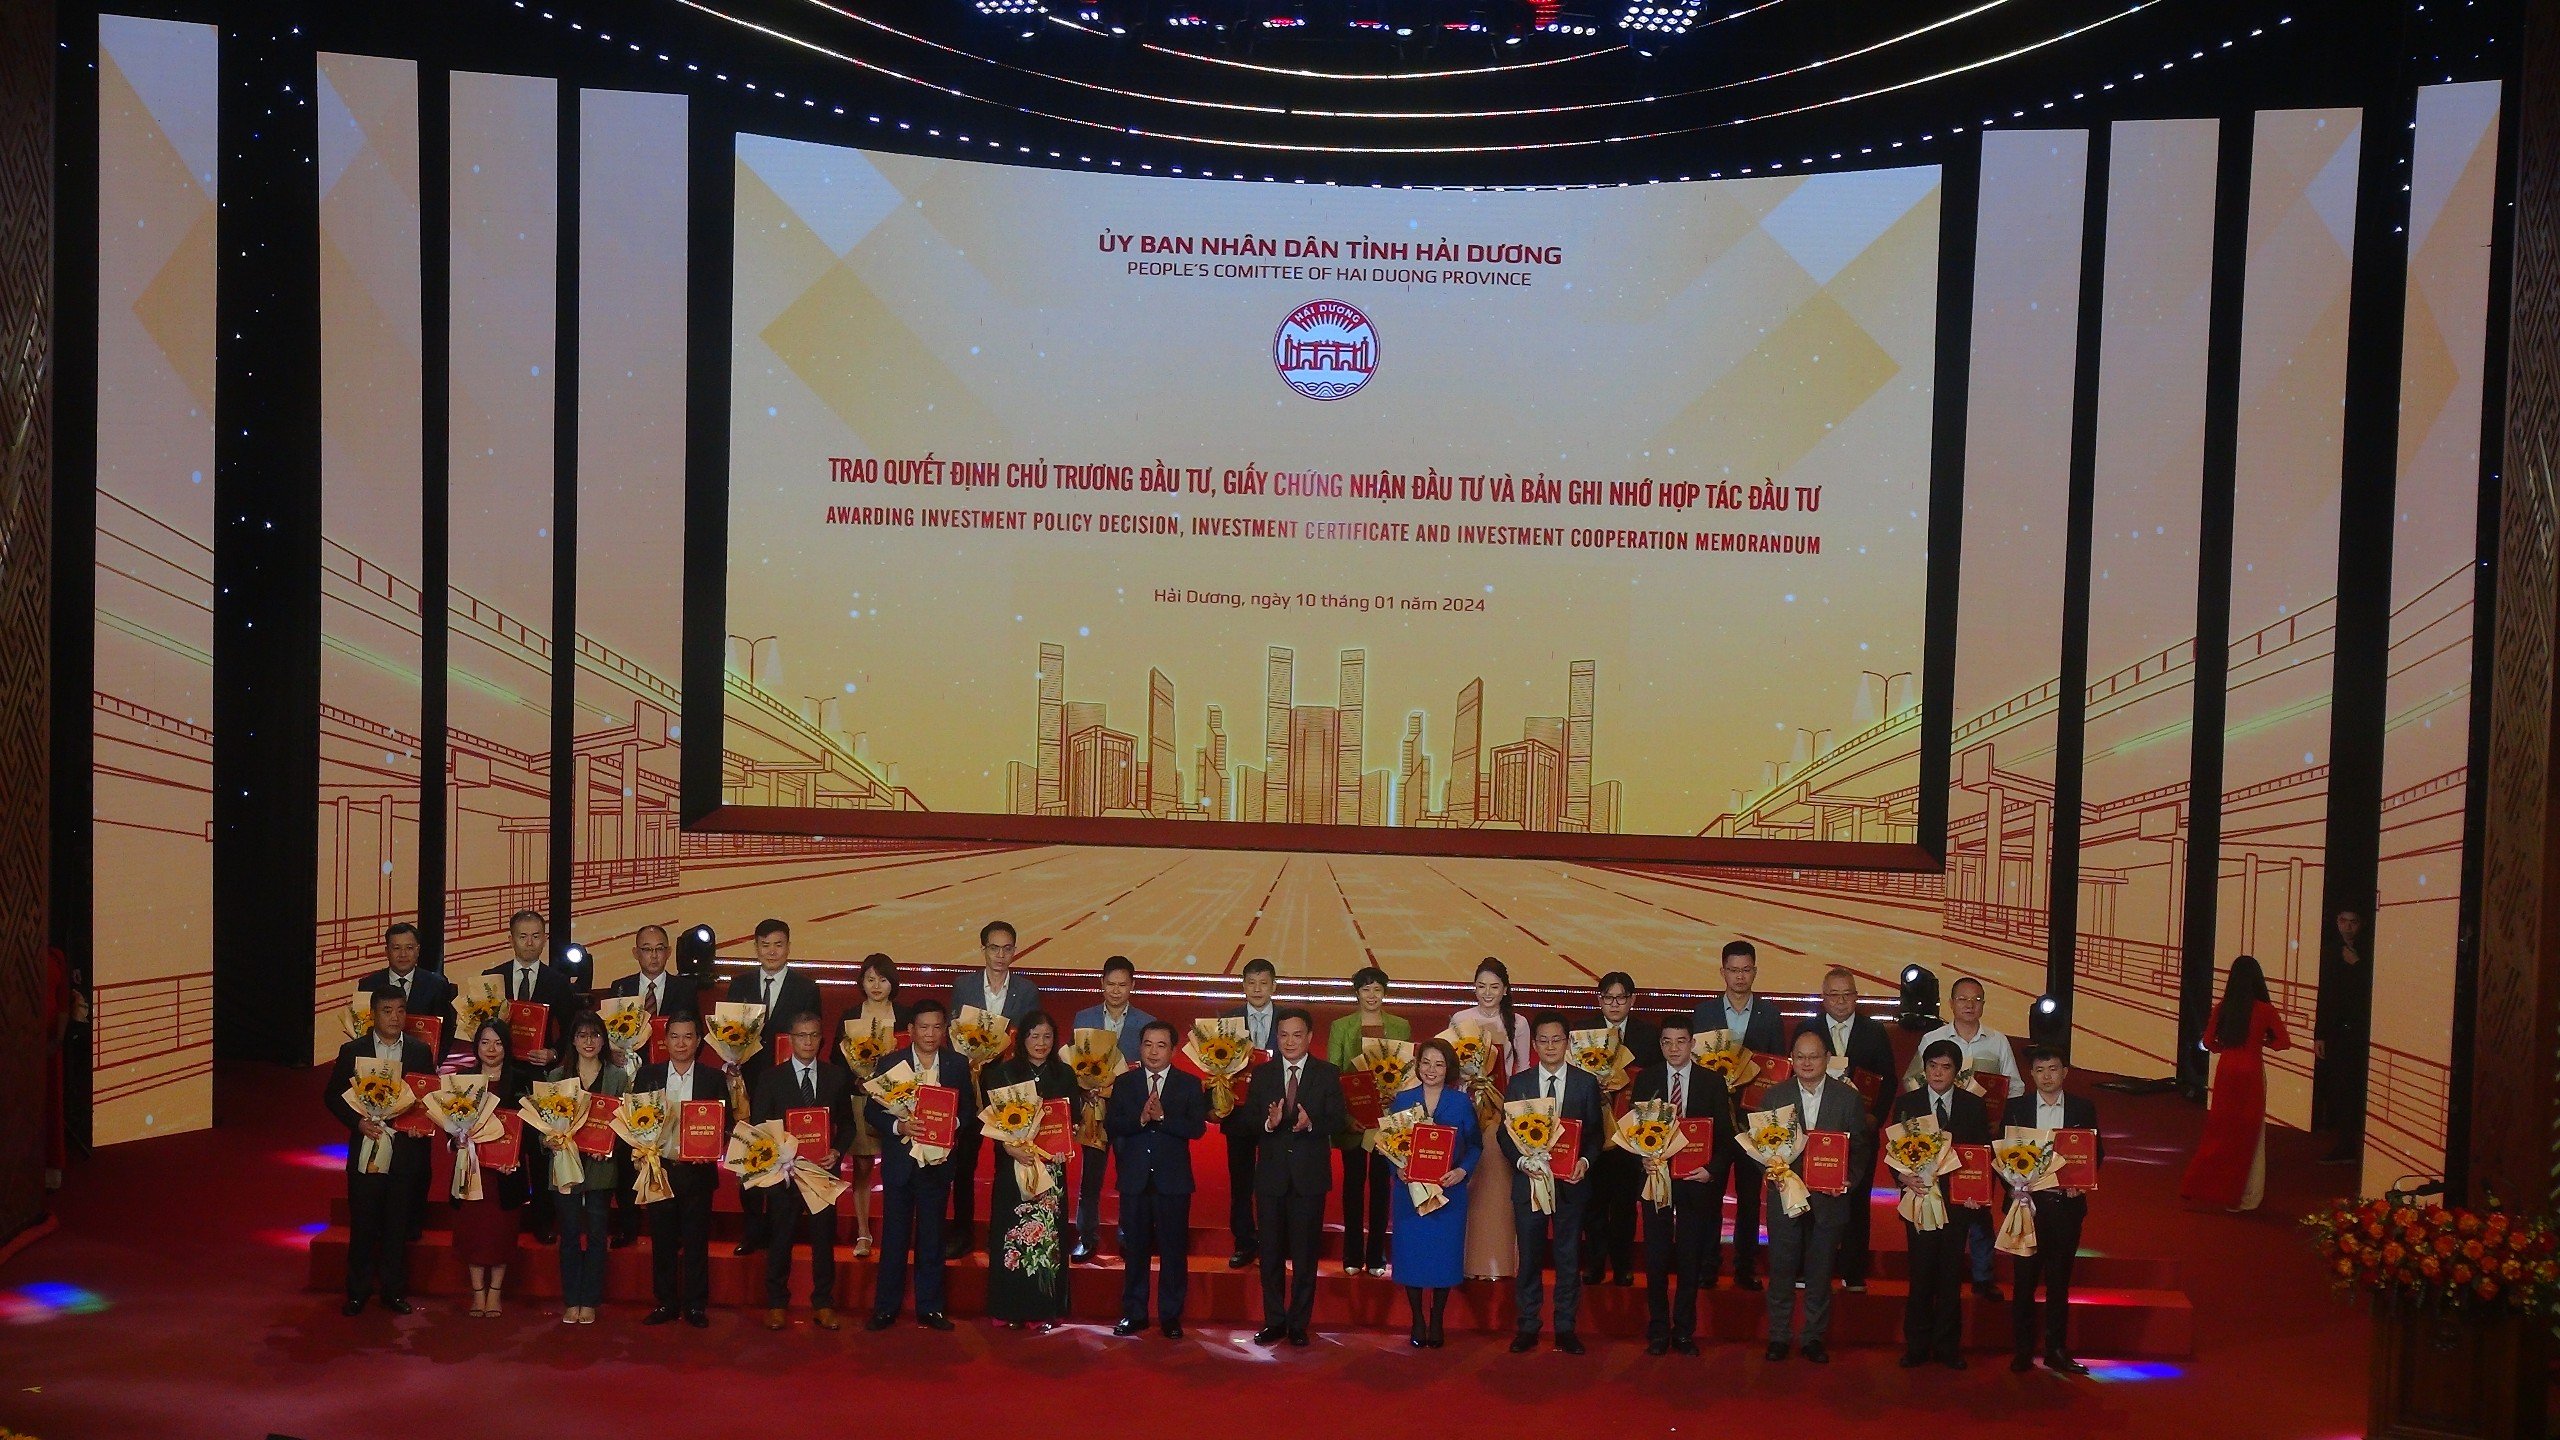 Lãnh đạo tỉnh Hải Dương trao giấy chứng nhận đầu tư cho 27 doanh nghiệp